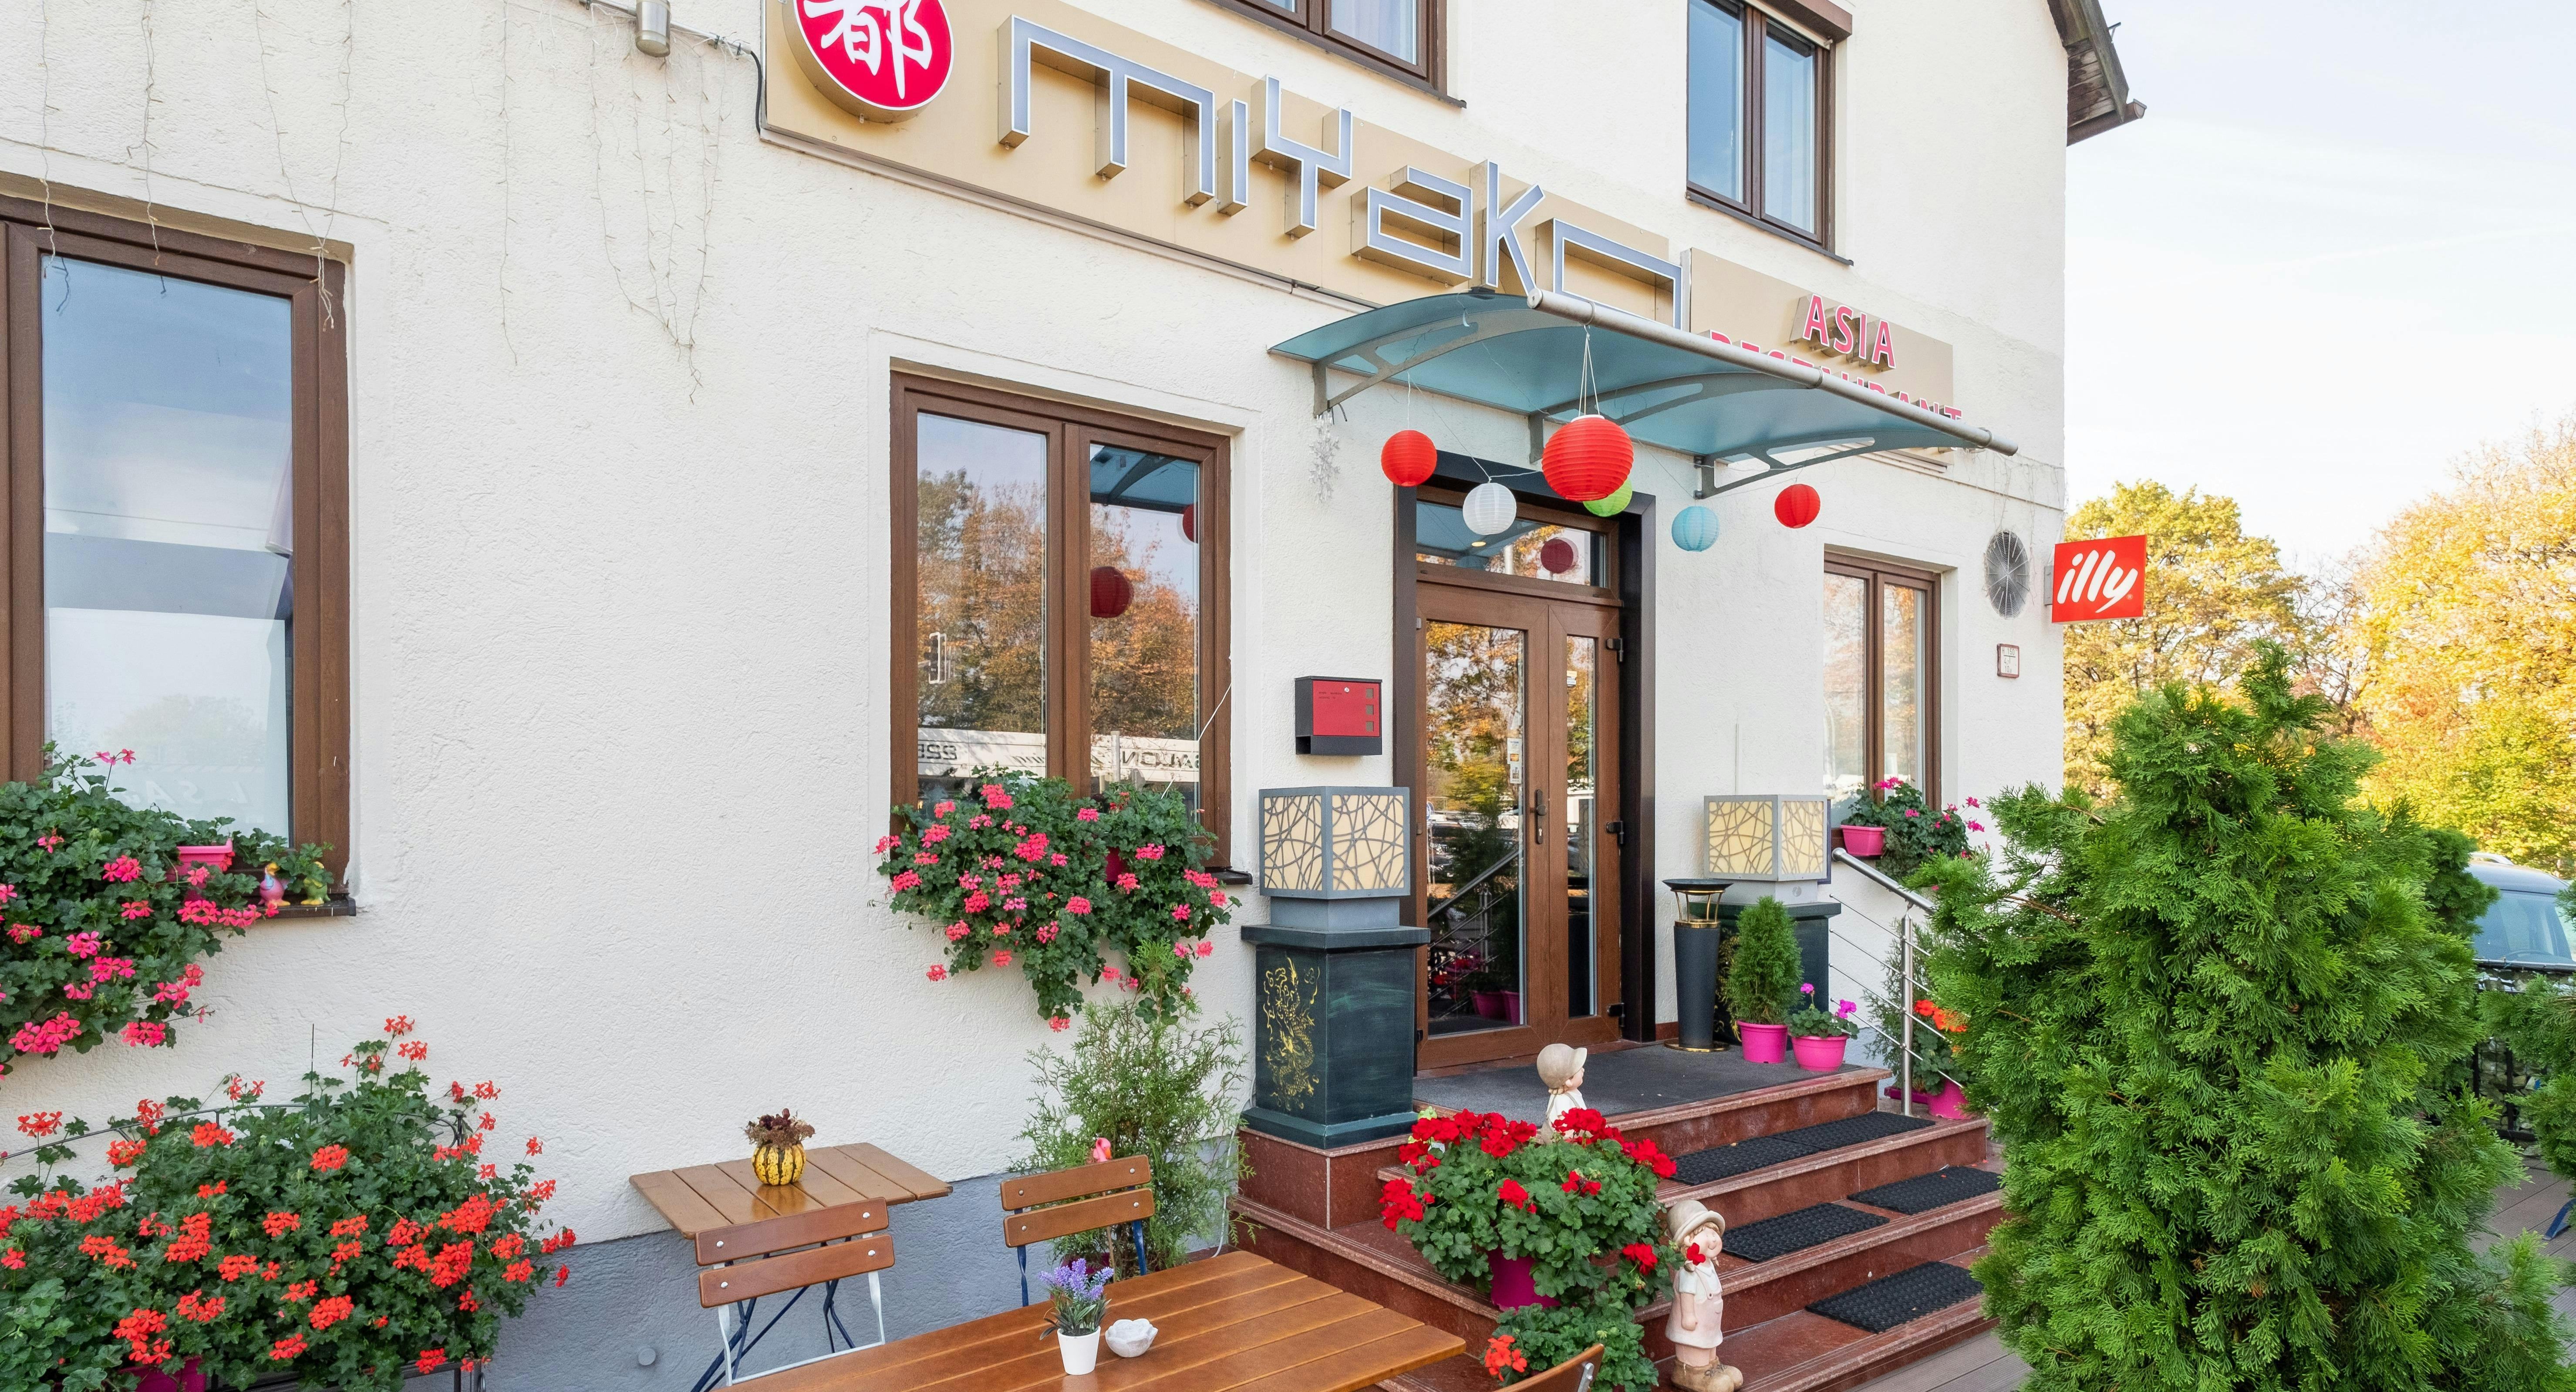 Photo of restaurant Miyako in Berg am Laim, Munich